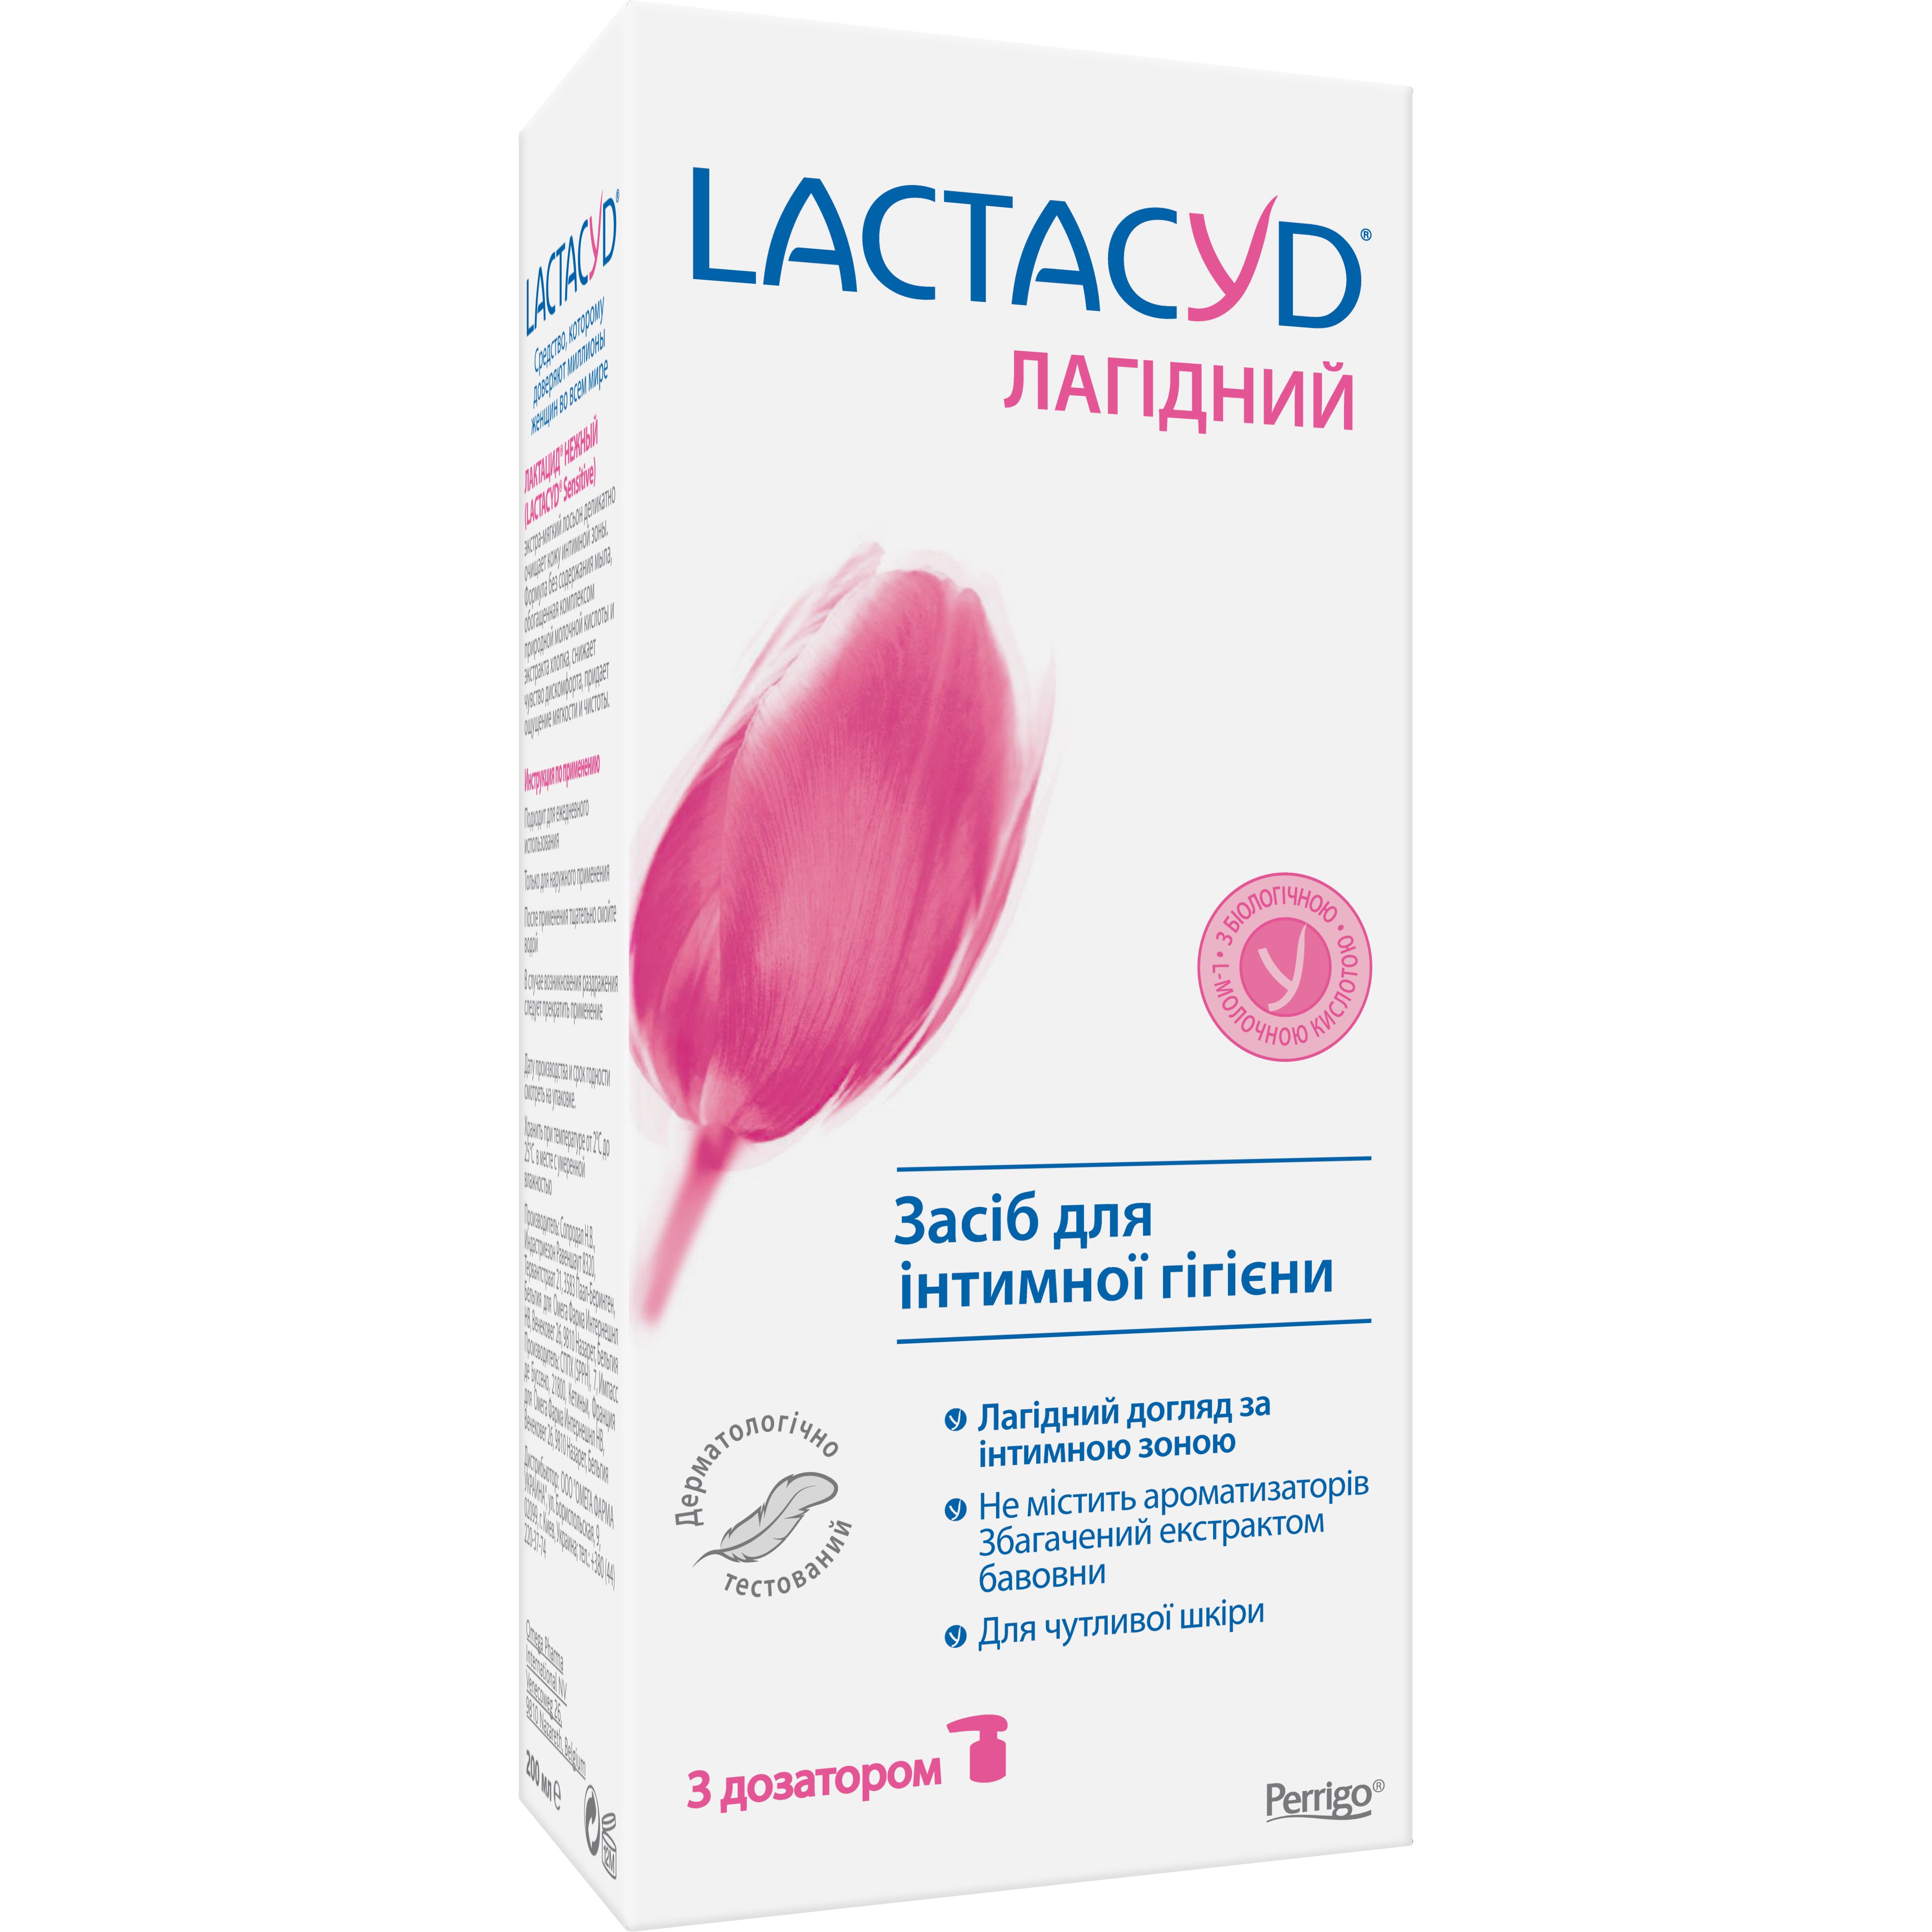 Засіб для інтимної гігієни Lactacyd Лагідний для чутливої шкіри з дозатором, 200 мл - фото 2